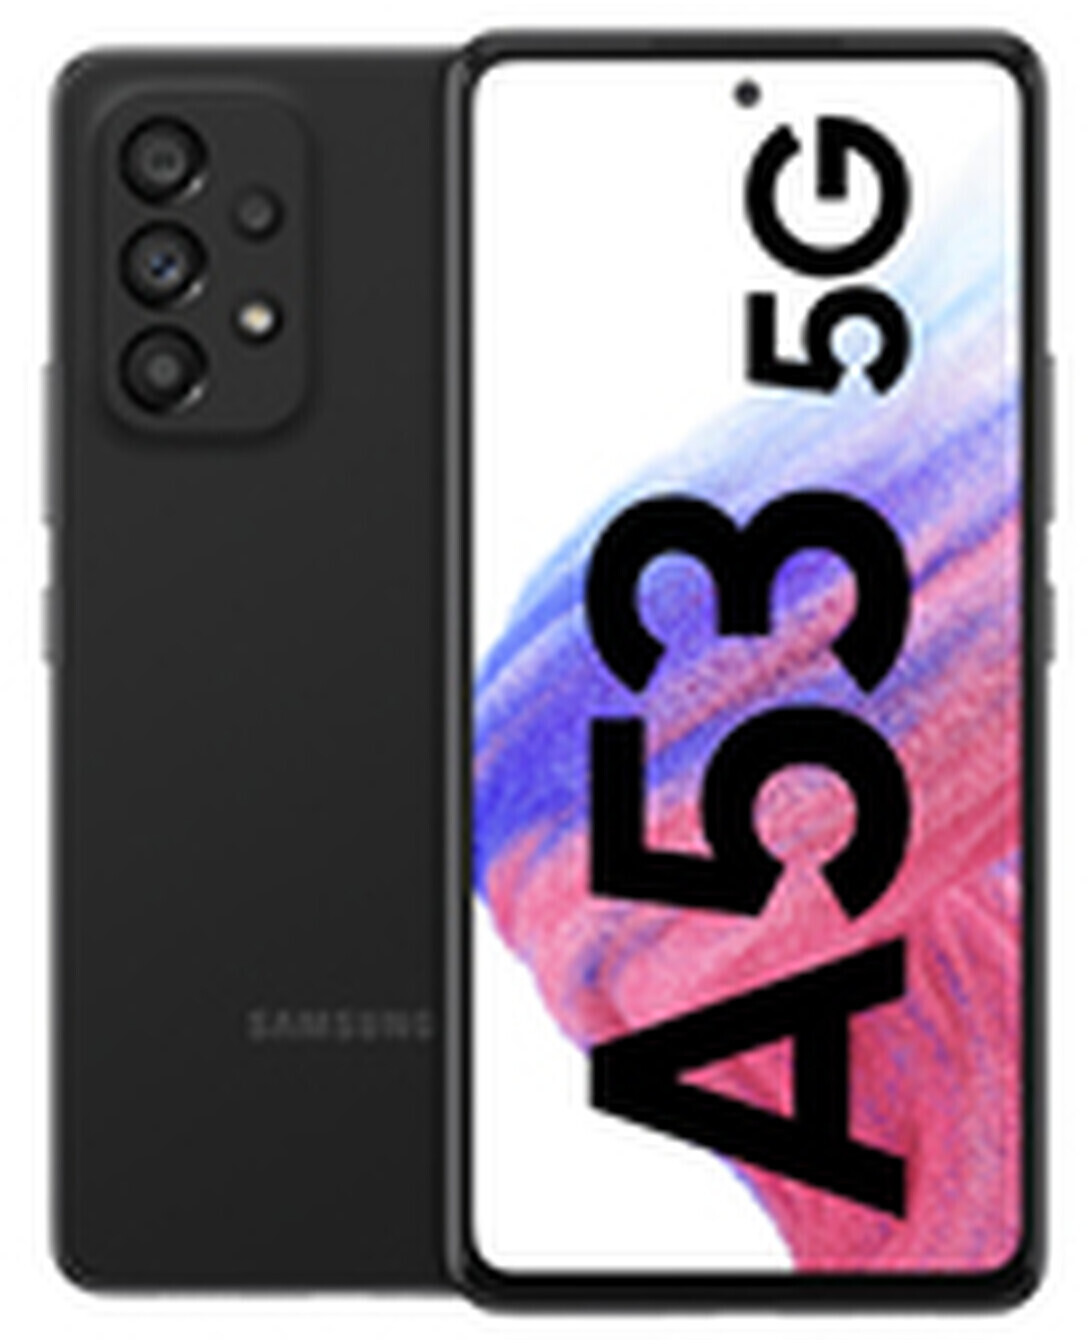 Samsung S21 Ultra 5G - Especificaciones - Movilines